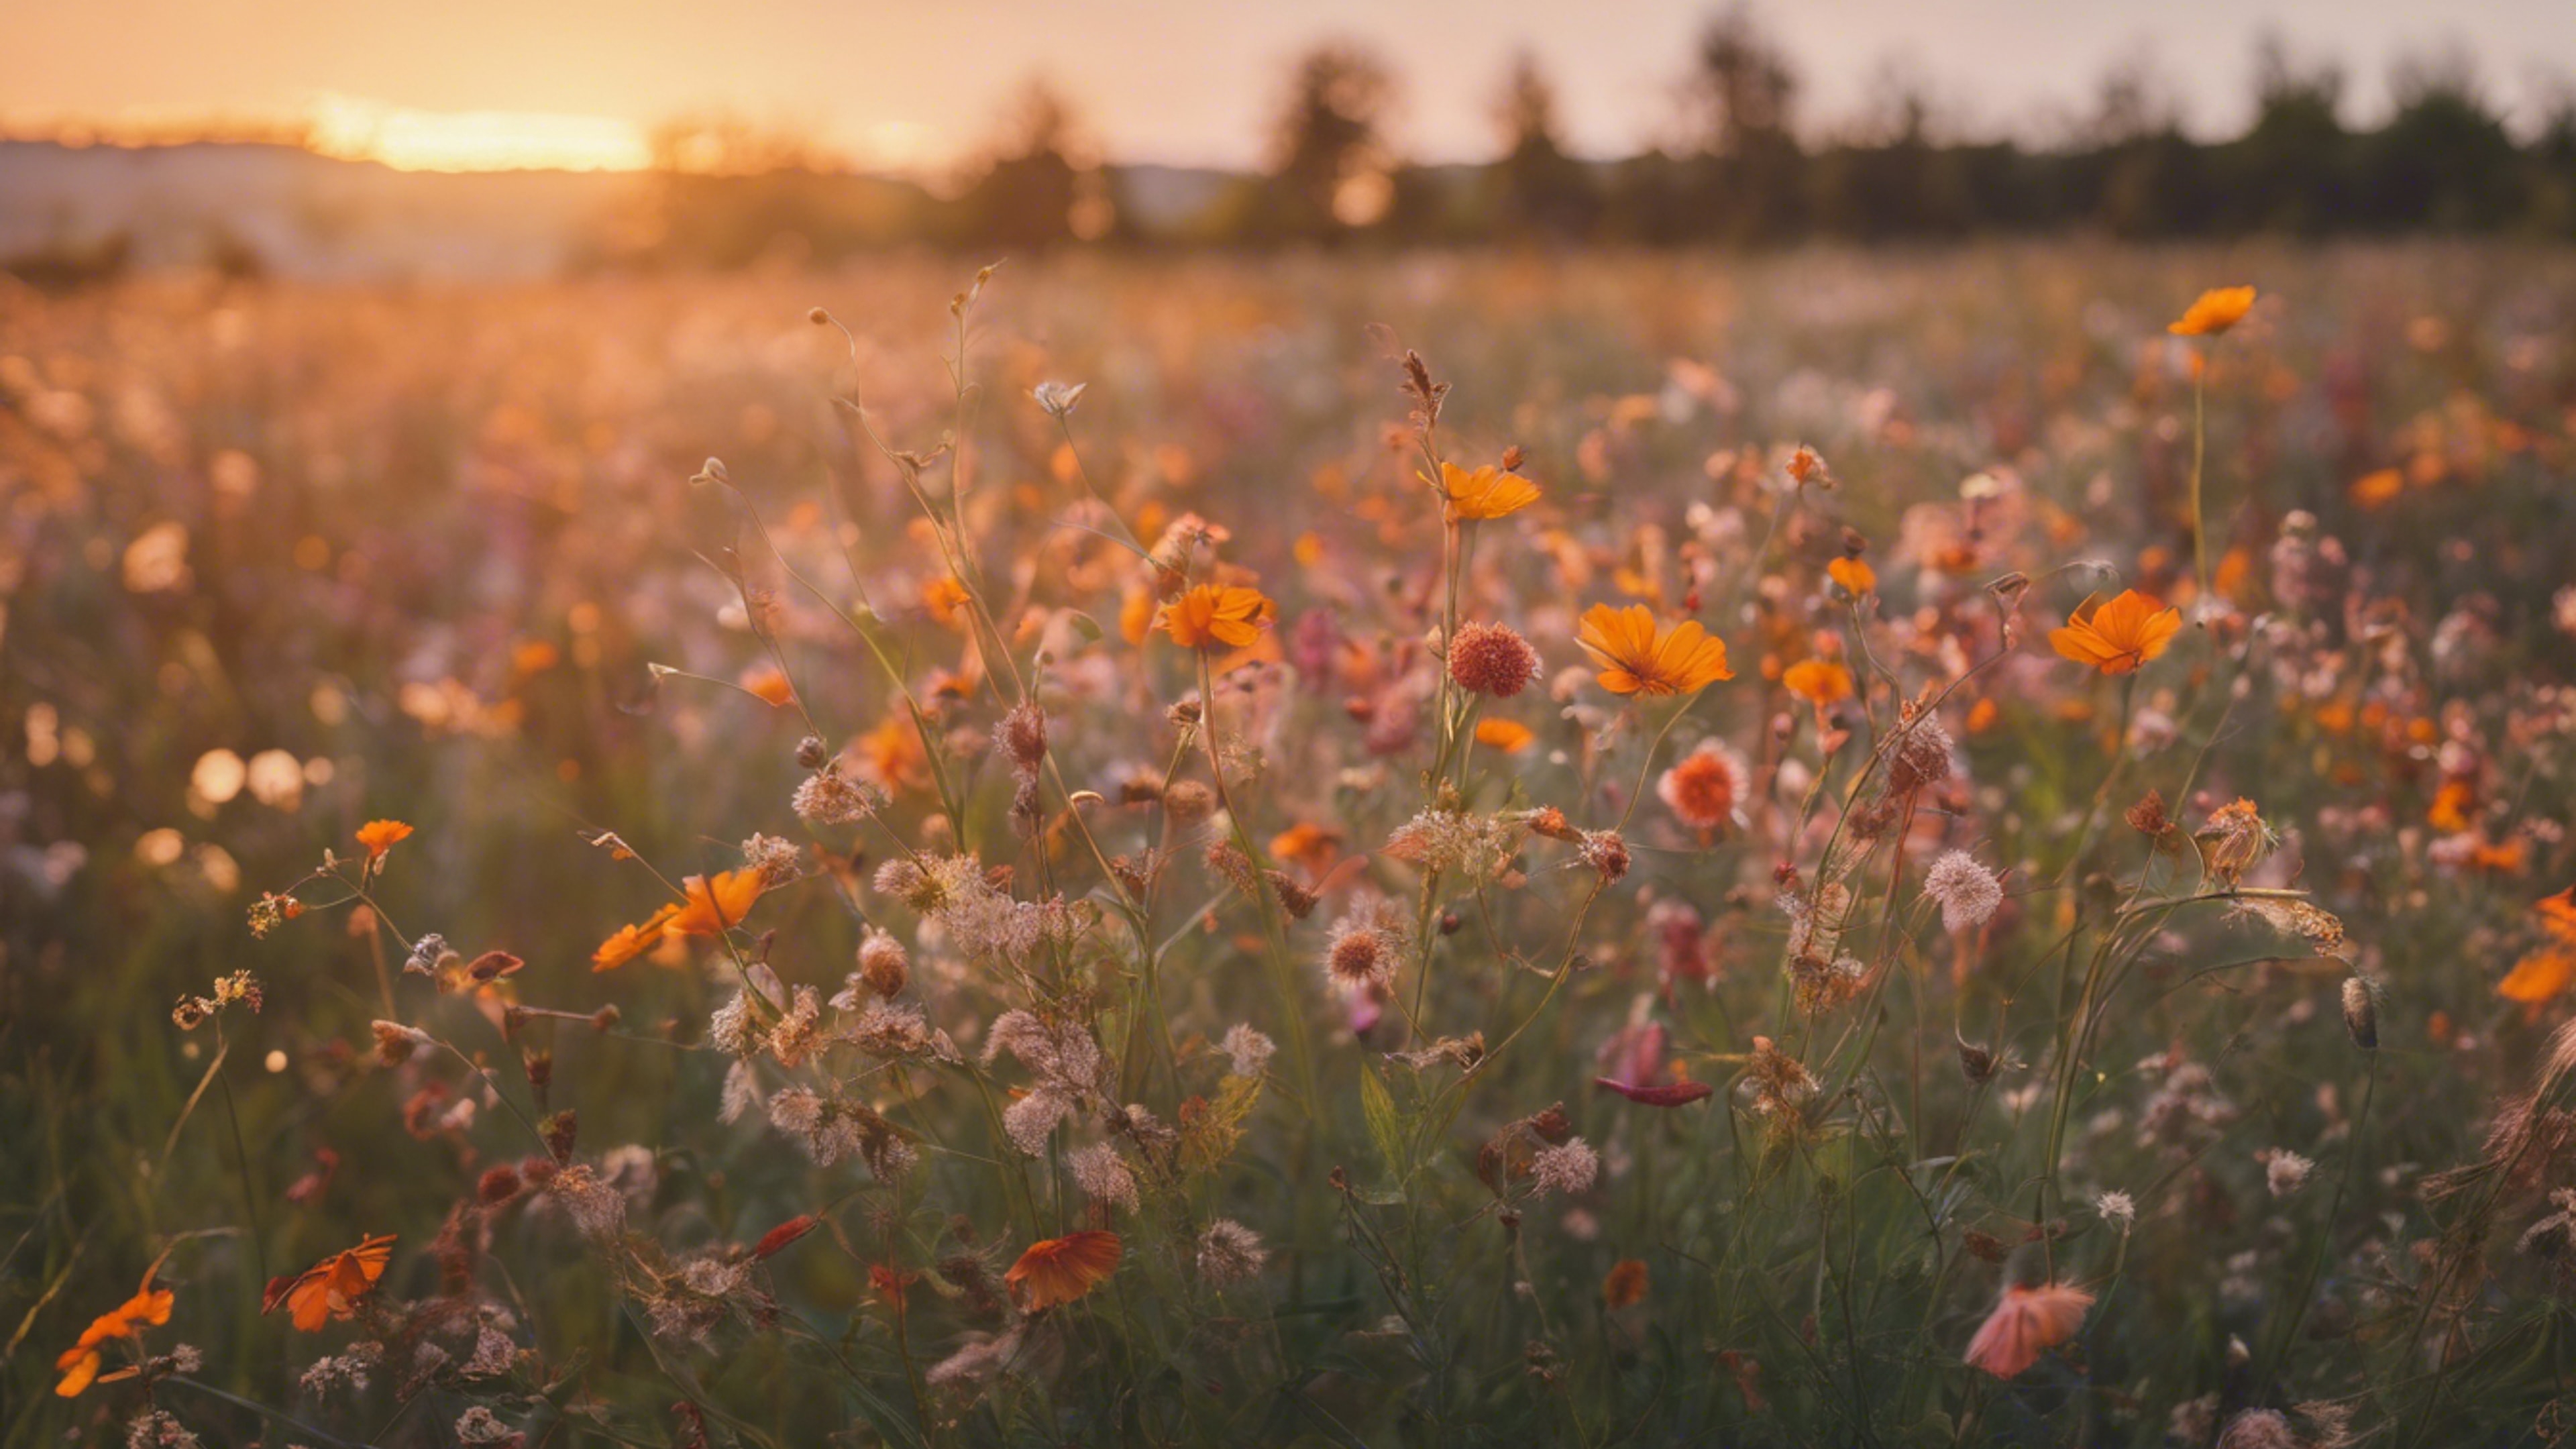 A nostalgic field of wildflowers in sunset hues. duvar kağıdı[1a5d684a5d8746a6914f]